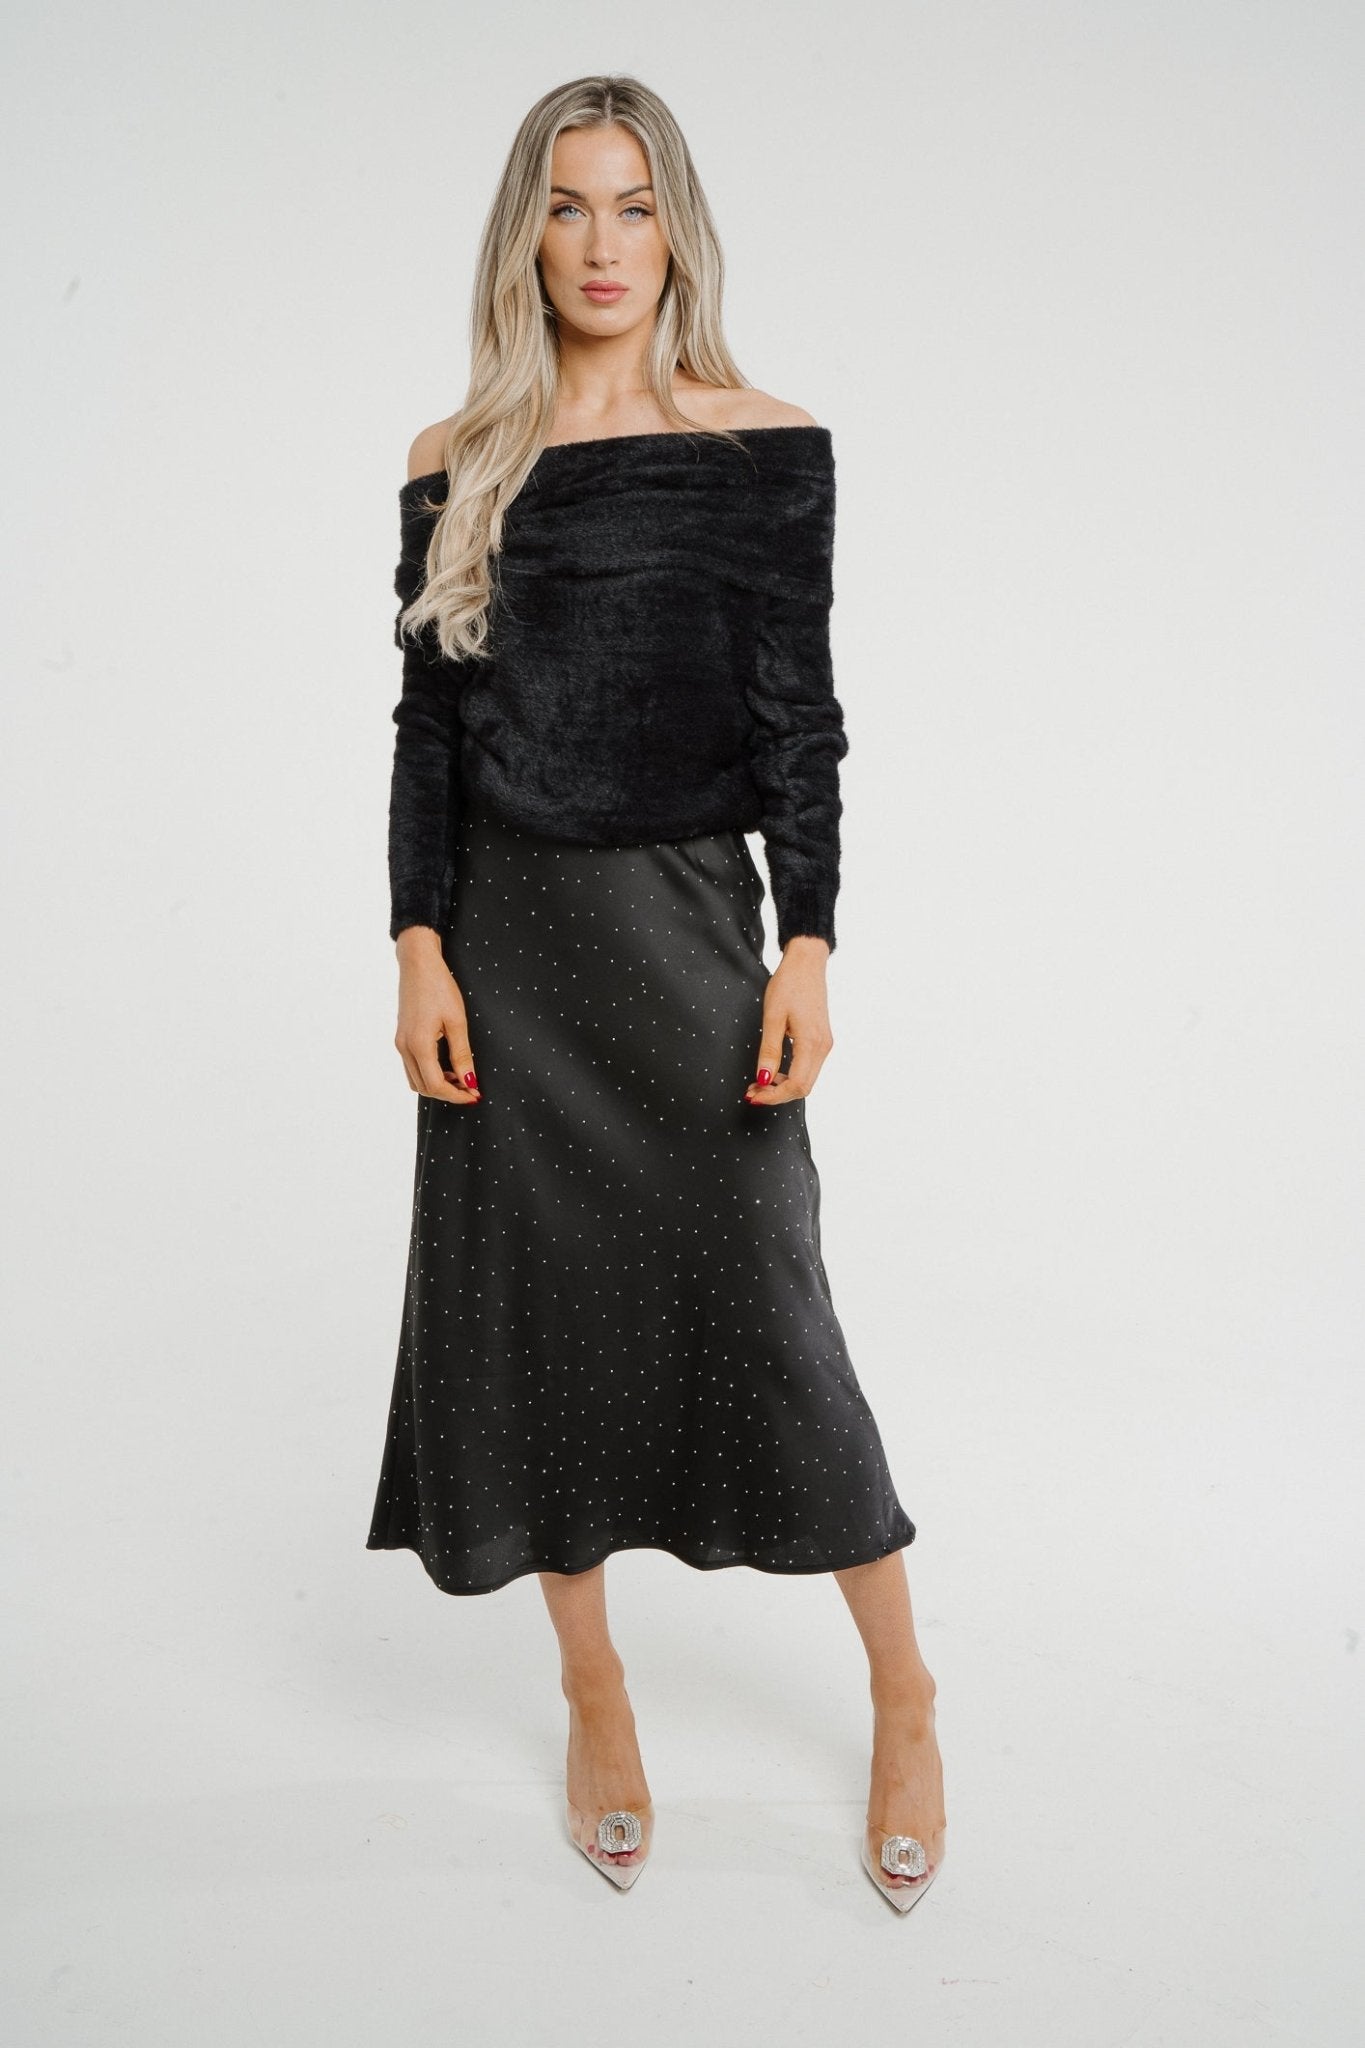 Kate Embellished Satin Midi Skirt In Black - The Walk in Wardrobe